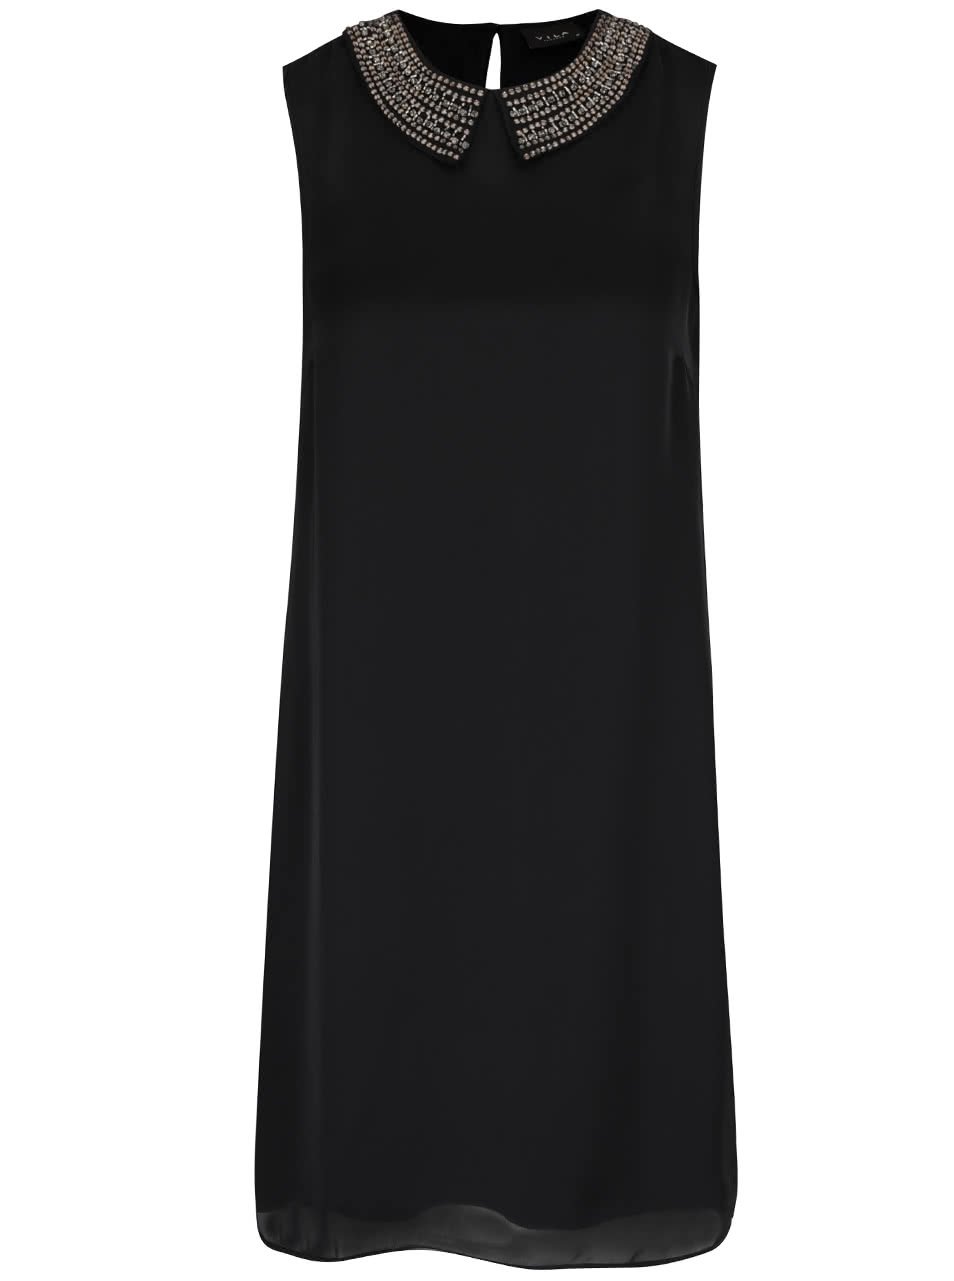 Černé šaty bez rukávů s detaily VILA Blingers